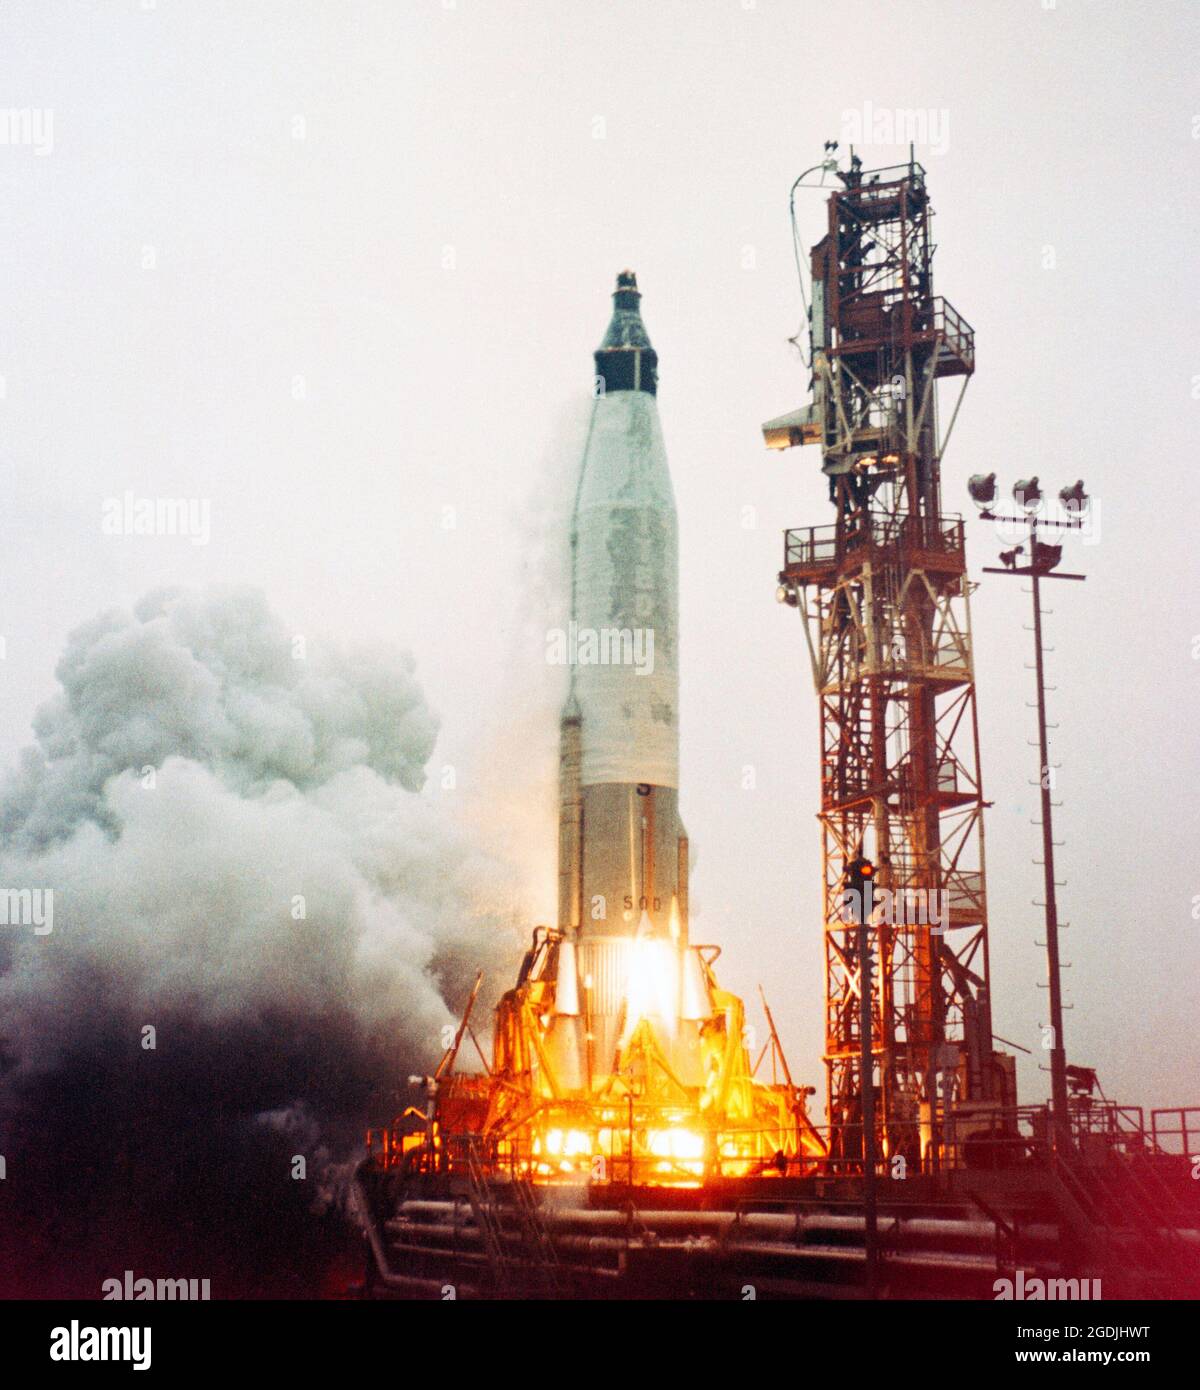 La fusée Mercury Atlas 1 se soulève de Cape Canavral en Floride. La fusée sans pilote a explosé 58 secondes après le décollage du 29 juillet 1960. Les débris ont été recueillis et les ingénieurs ont tenté de remonter ma-1 pour déterminer la cause de l'explosion. Banque D'Images